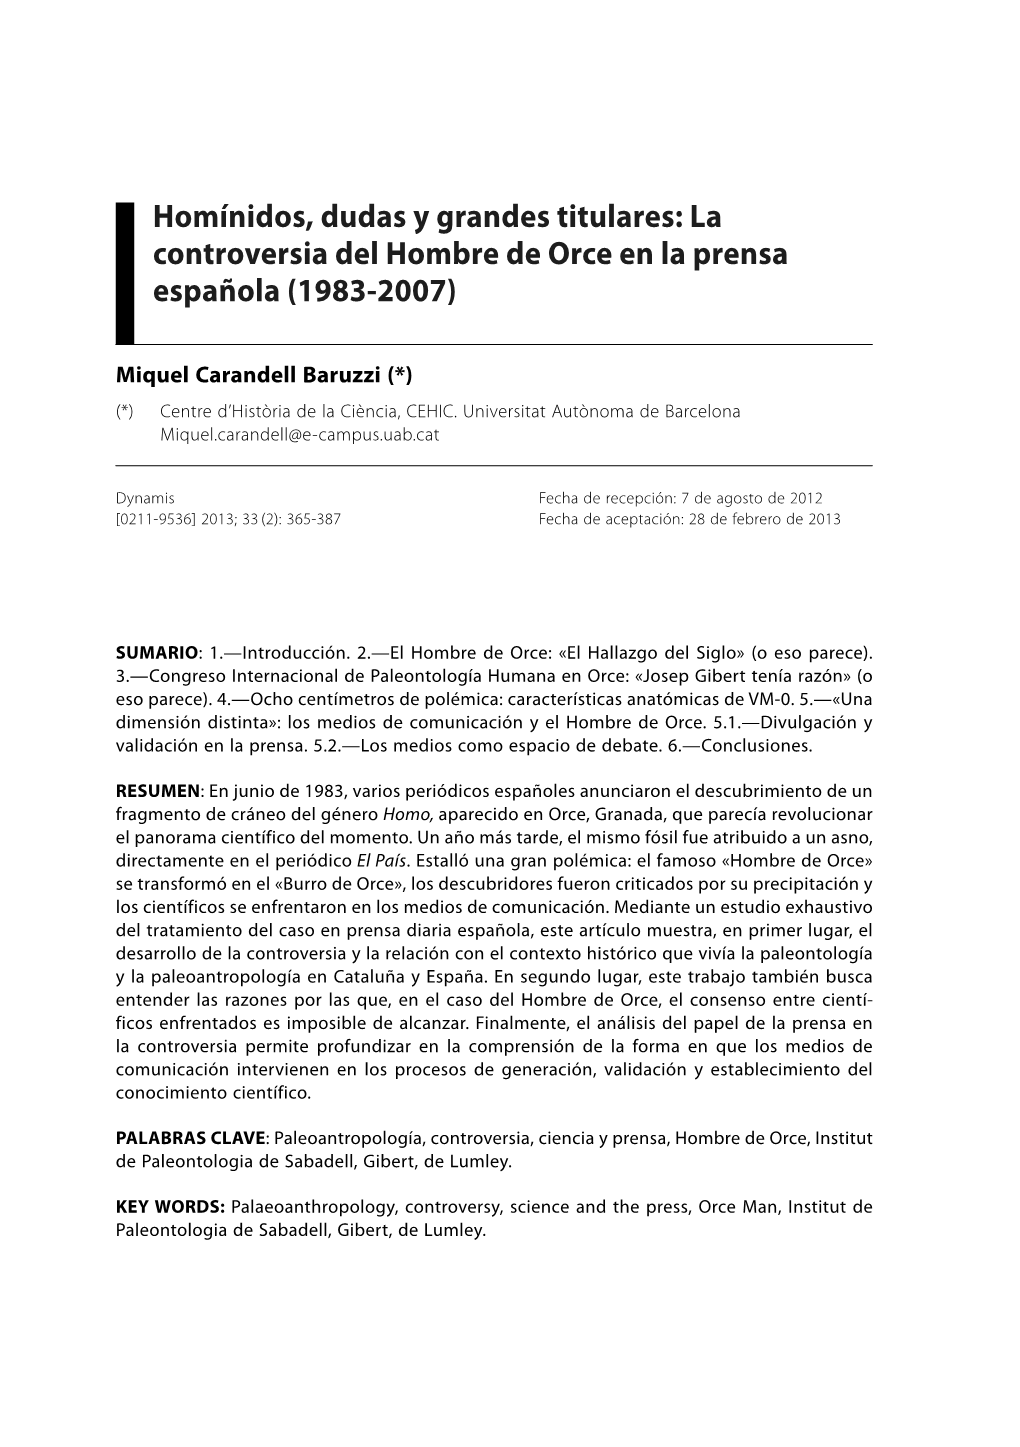 Homínidos, Dudas Y Grandes Titulares: La Controversia Del Hombre De Orce En La Prensa Española (1983-2007)